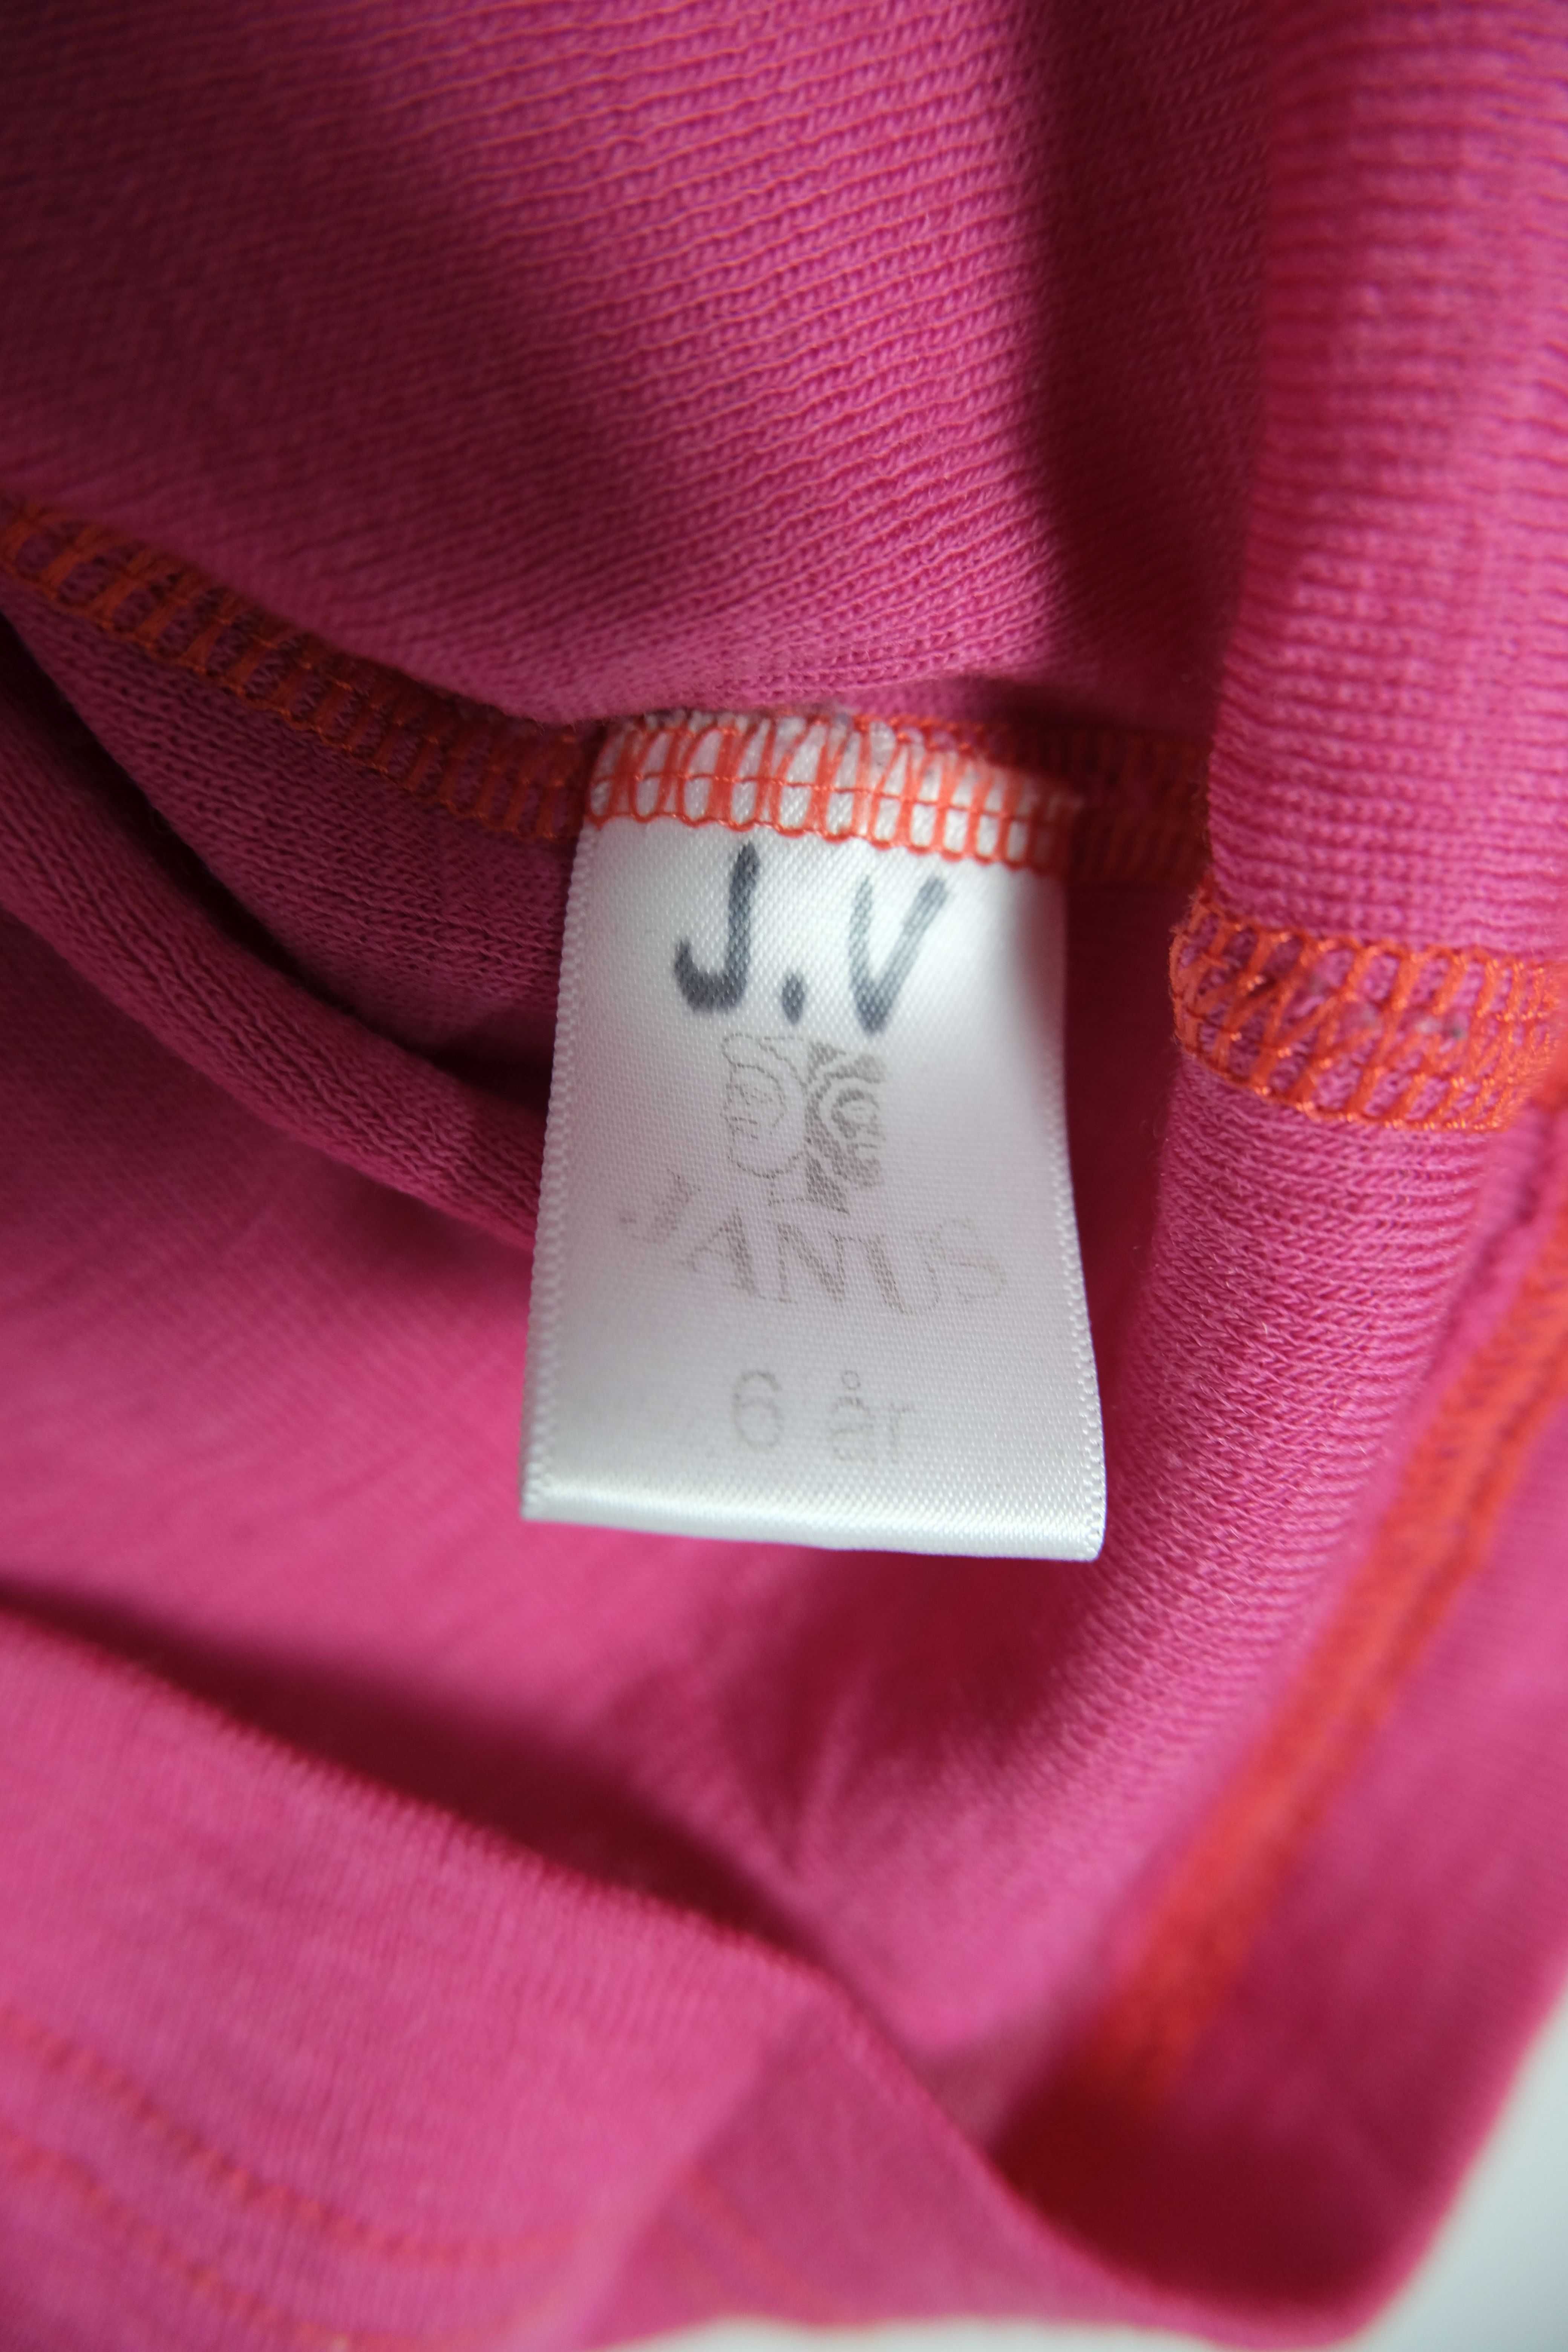 Janus termiczna  merino wool komplet dla dziewczynki 6 lat